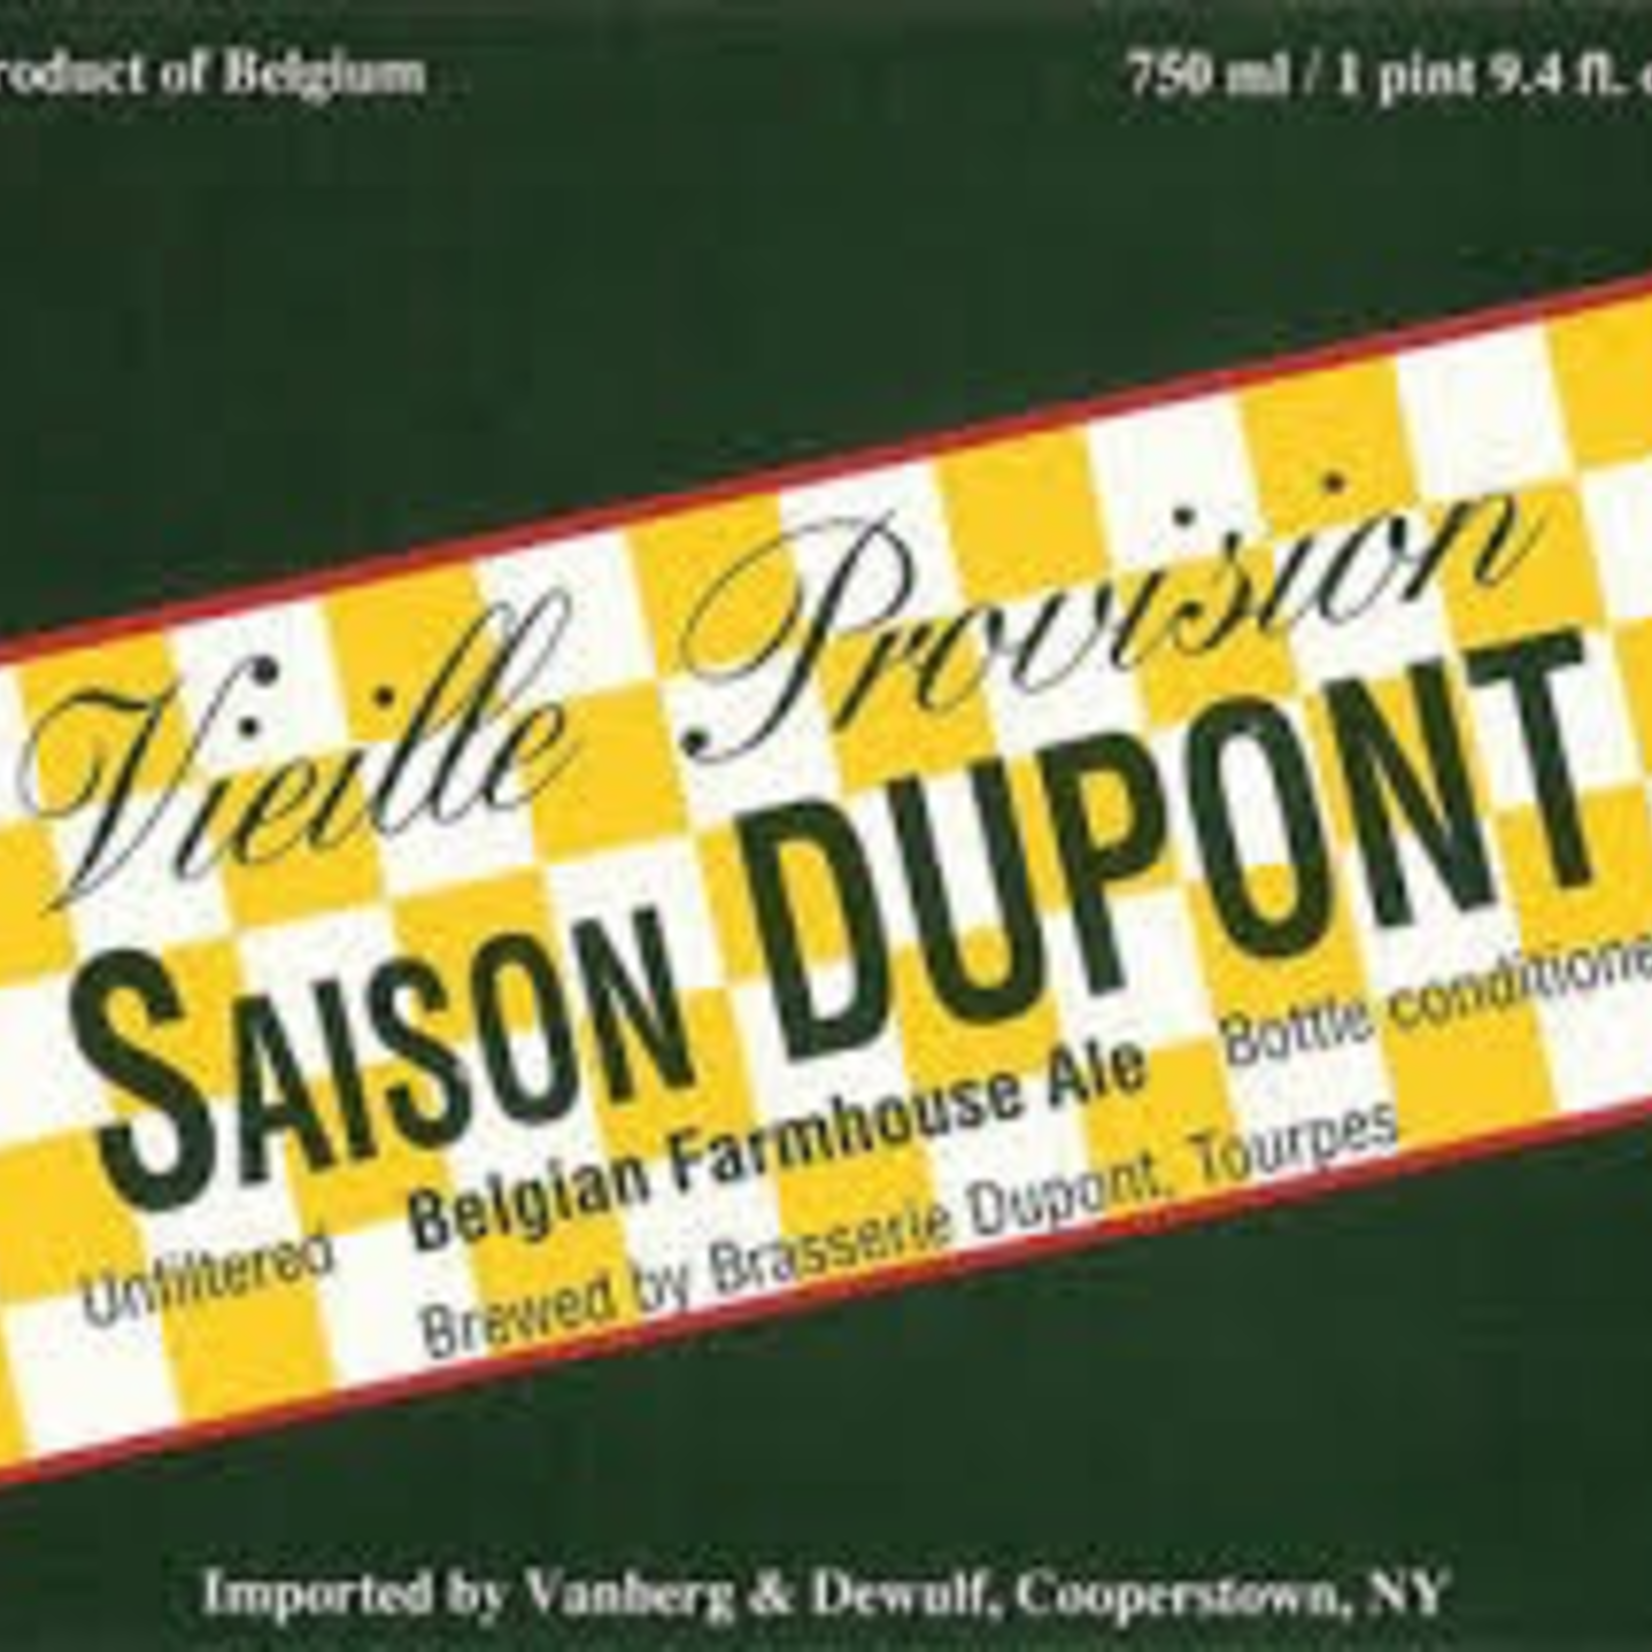 Belgium Dupont Saison 4pk bottles